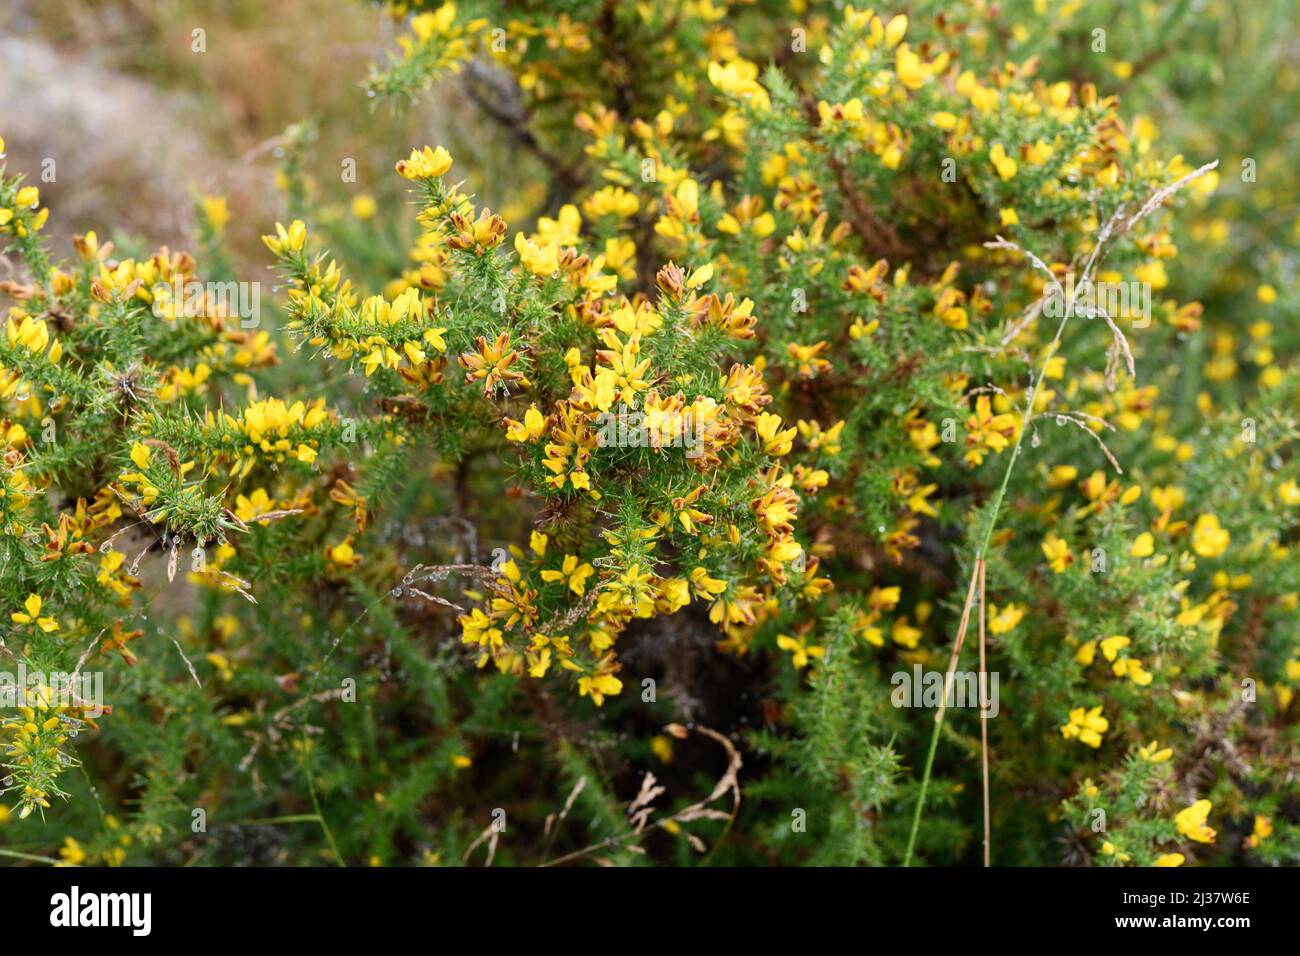 Le gorse (Ulex europaeus) est un arbuste épineux originaire de l'Europe occidentale (côtes atlantiques). Cette photo a été prise à Vilarinho Seco, Portugal. Banque D'Images